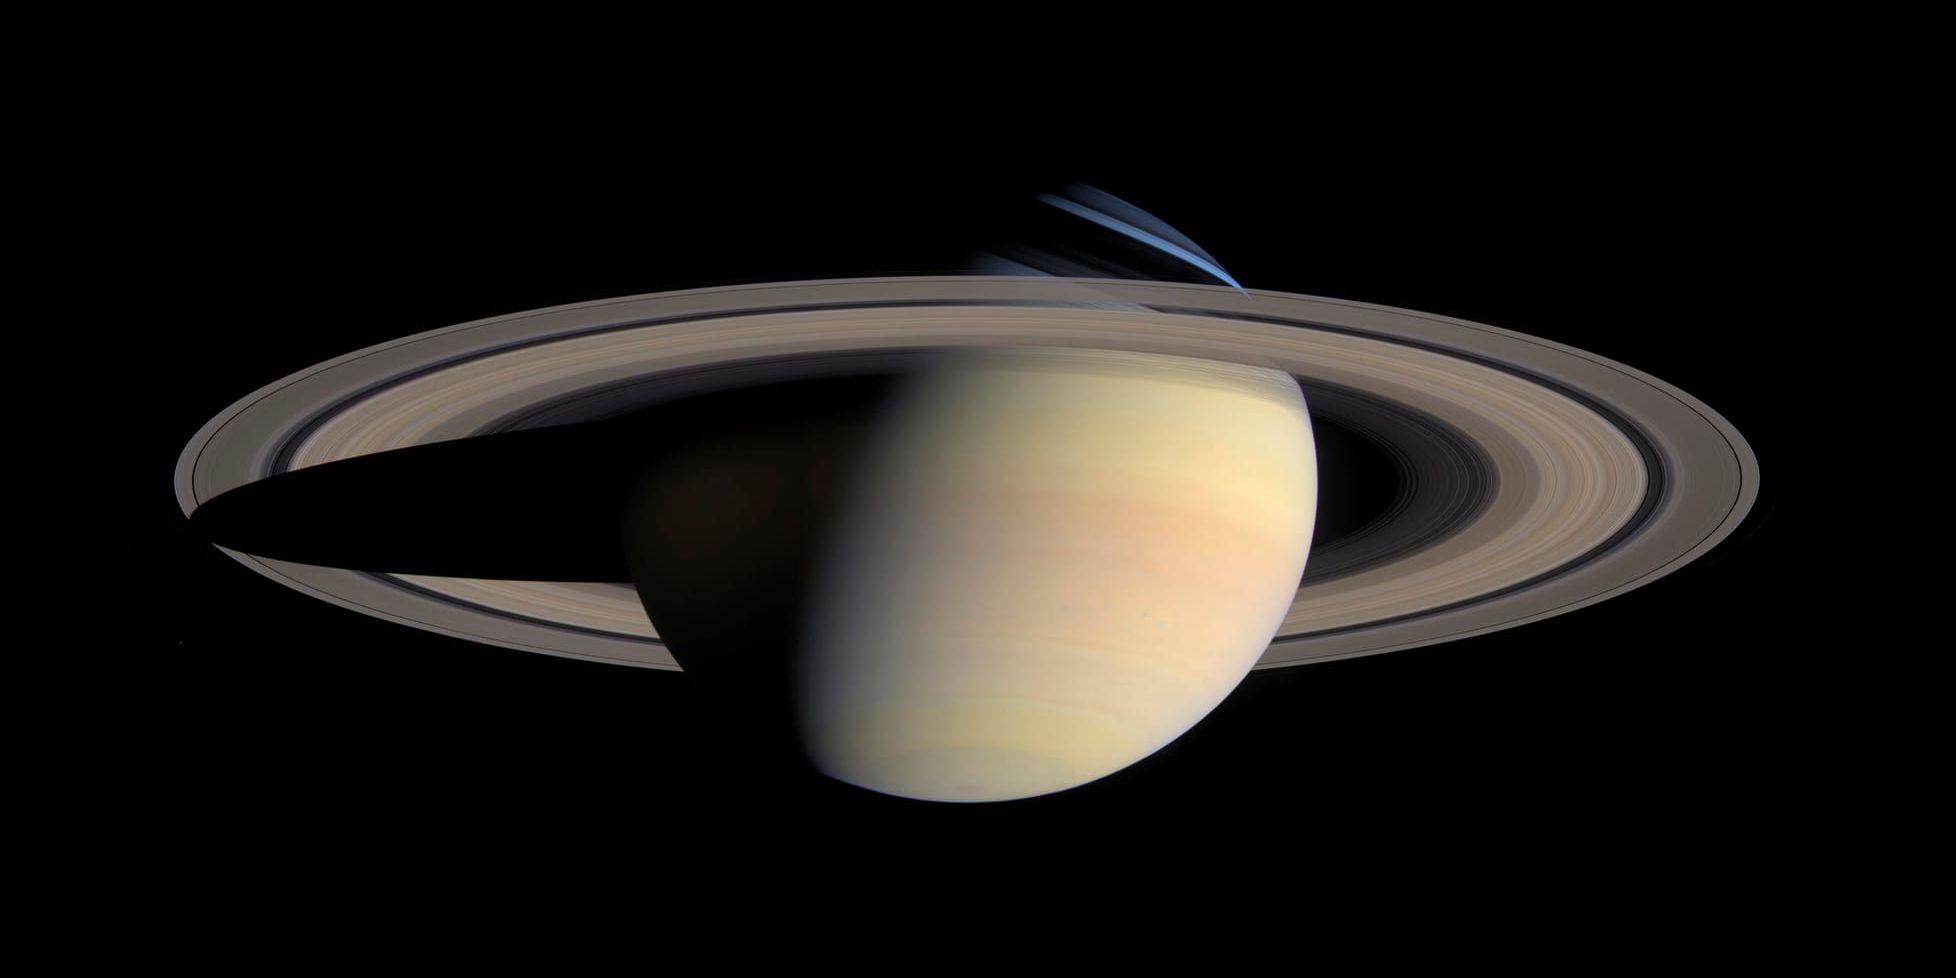 En av Cassinis bilder av Saturnus, tagen 2004. De första resultaten från sonden kommer från det svenska mätinstrument som följde med. Arkivbild.